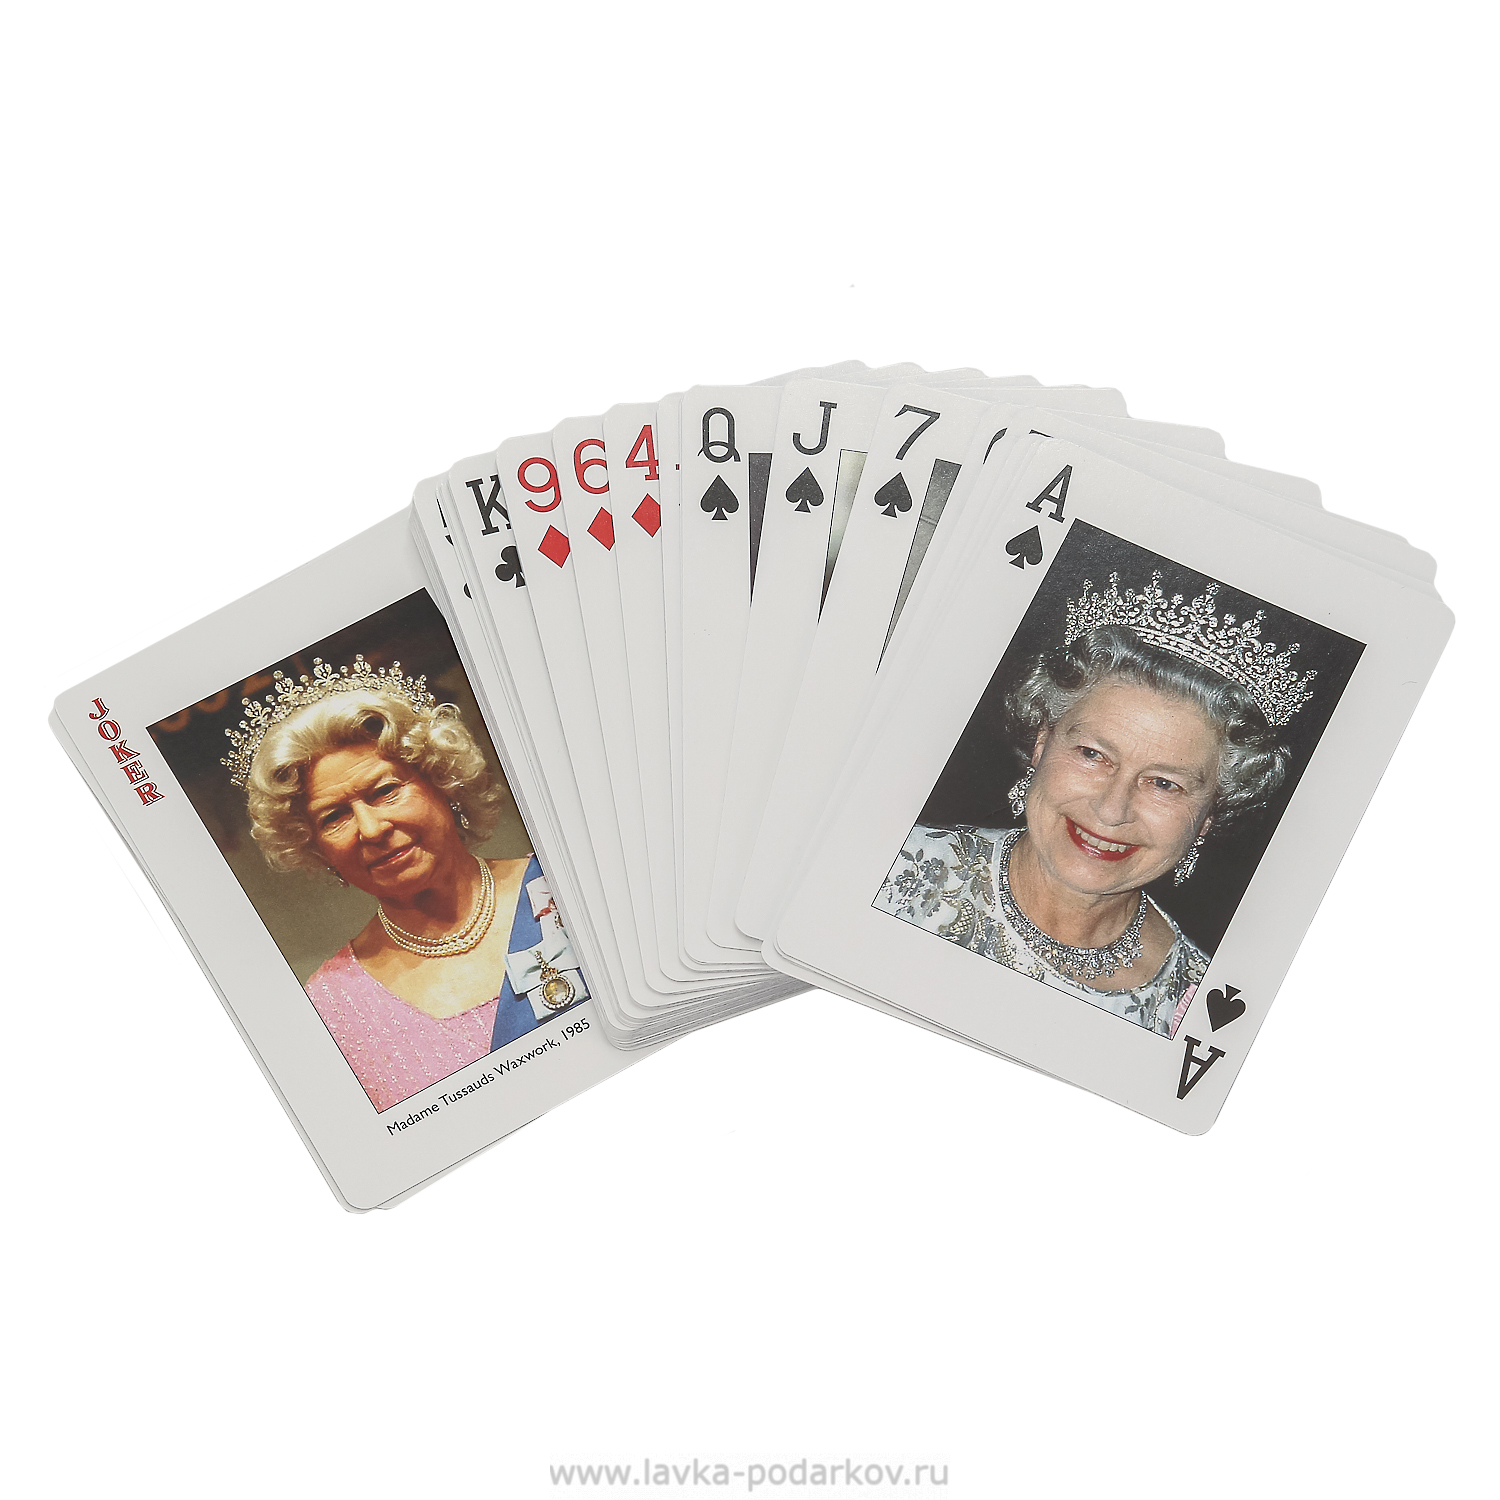 Queen card g. Игра карточная "мафия" 17 карт+ классич.колода карт(36 шт.)арт. 7093 /144. Карточная игра "мафия". Настольная игра мафия Люкс. Карты мафия набор.